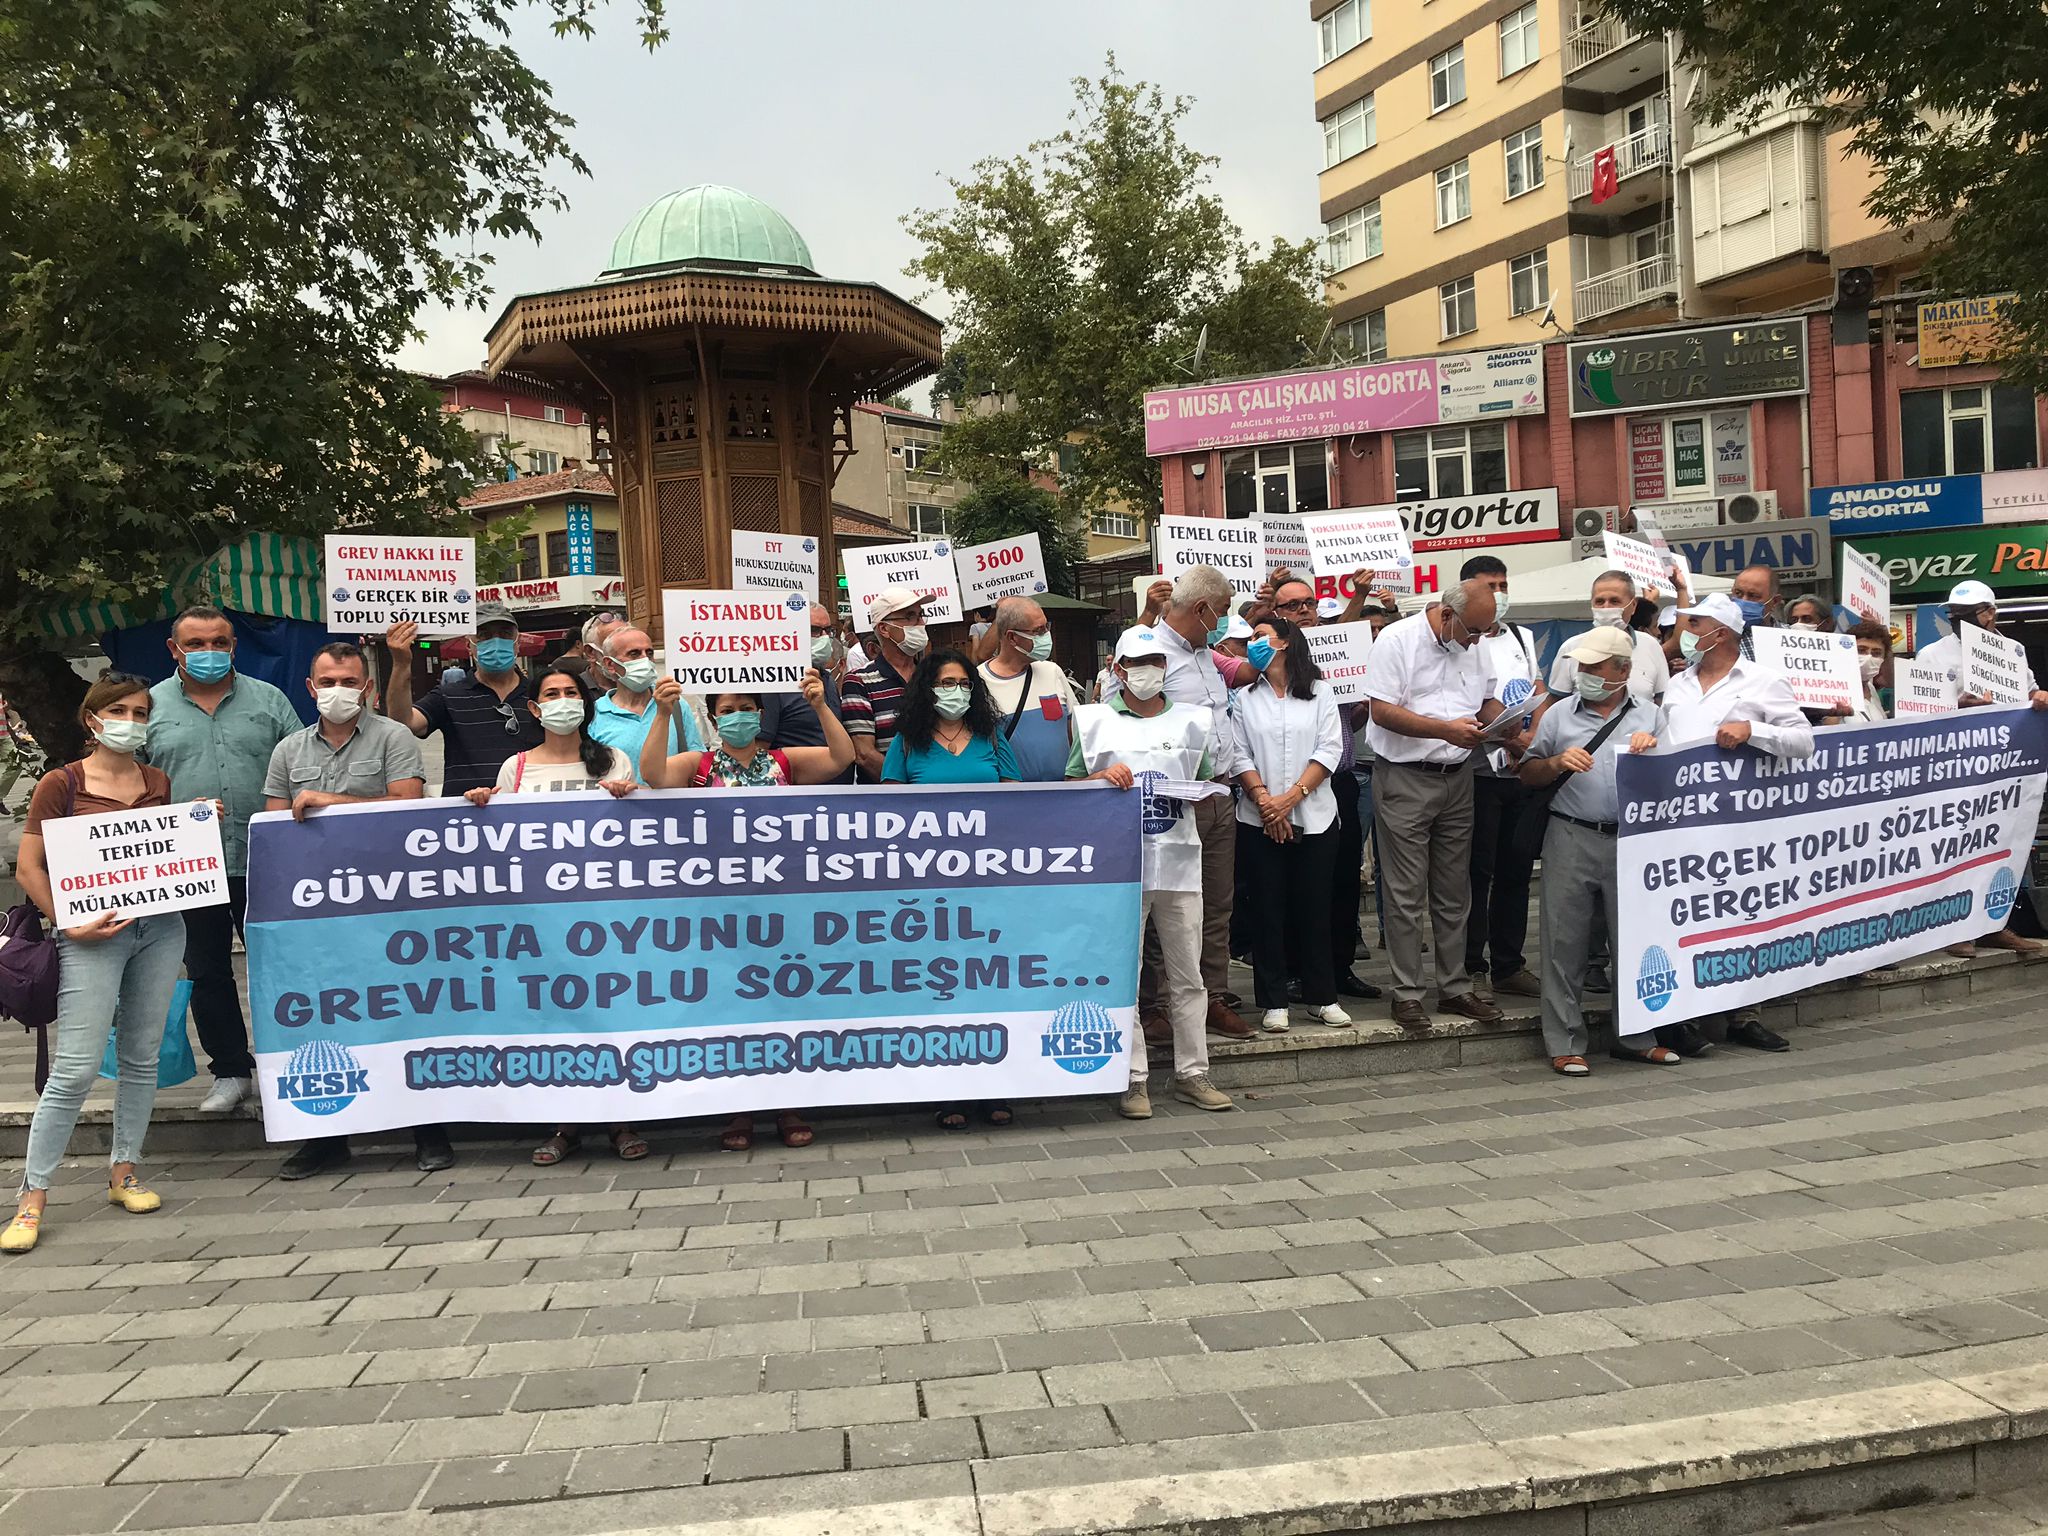 Bursa’da TİS Taleplerimiz Basın Açıklaması ile Duyuruldu